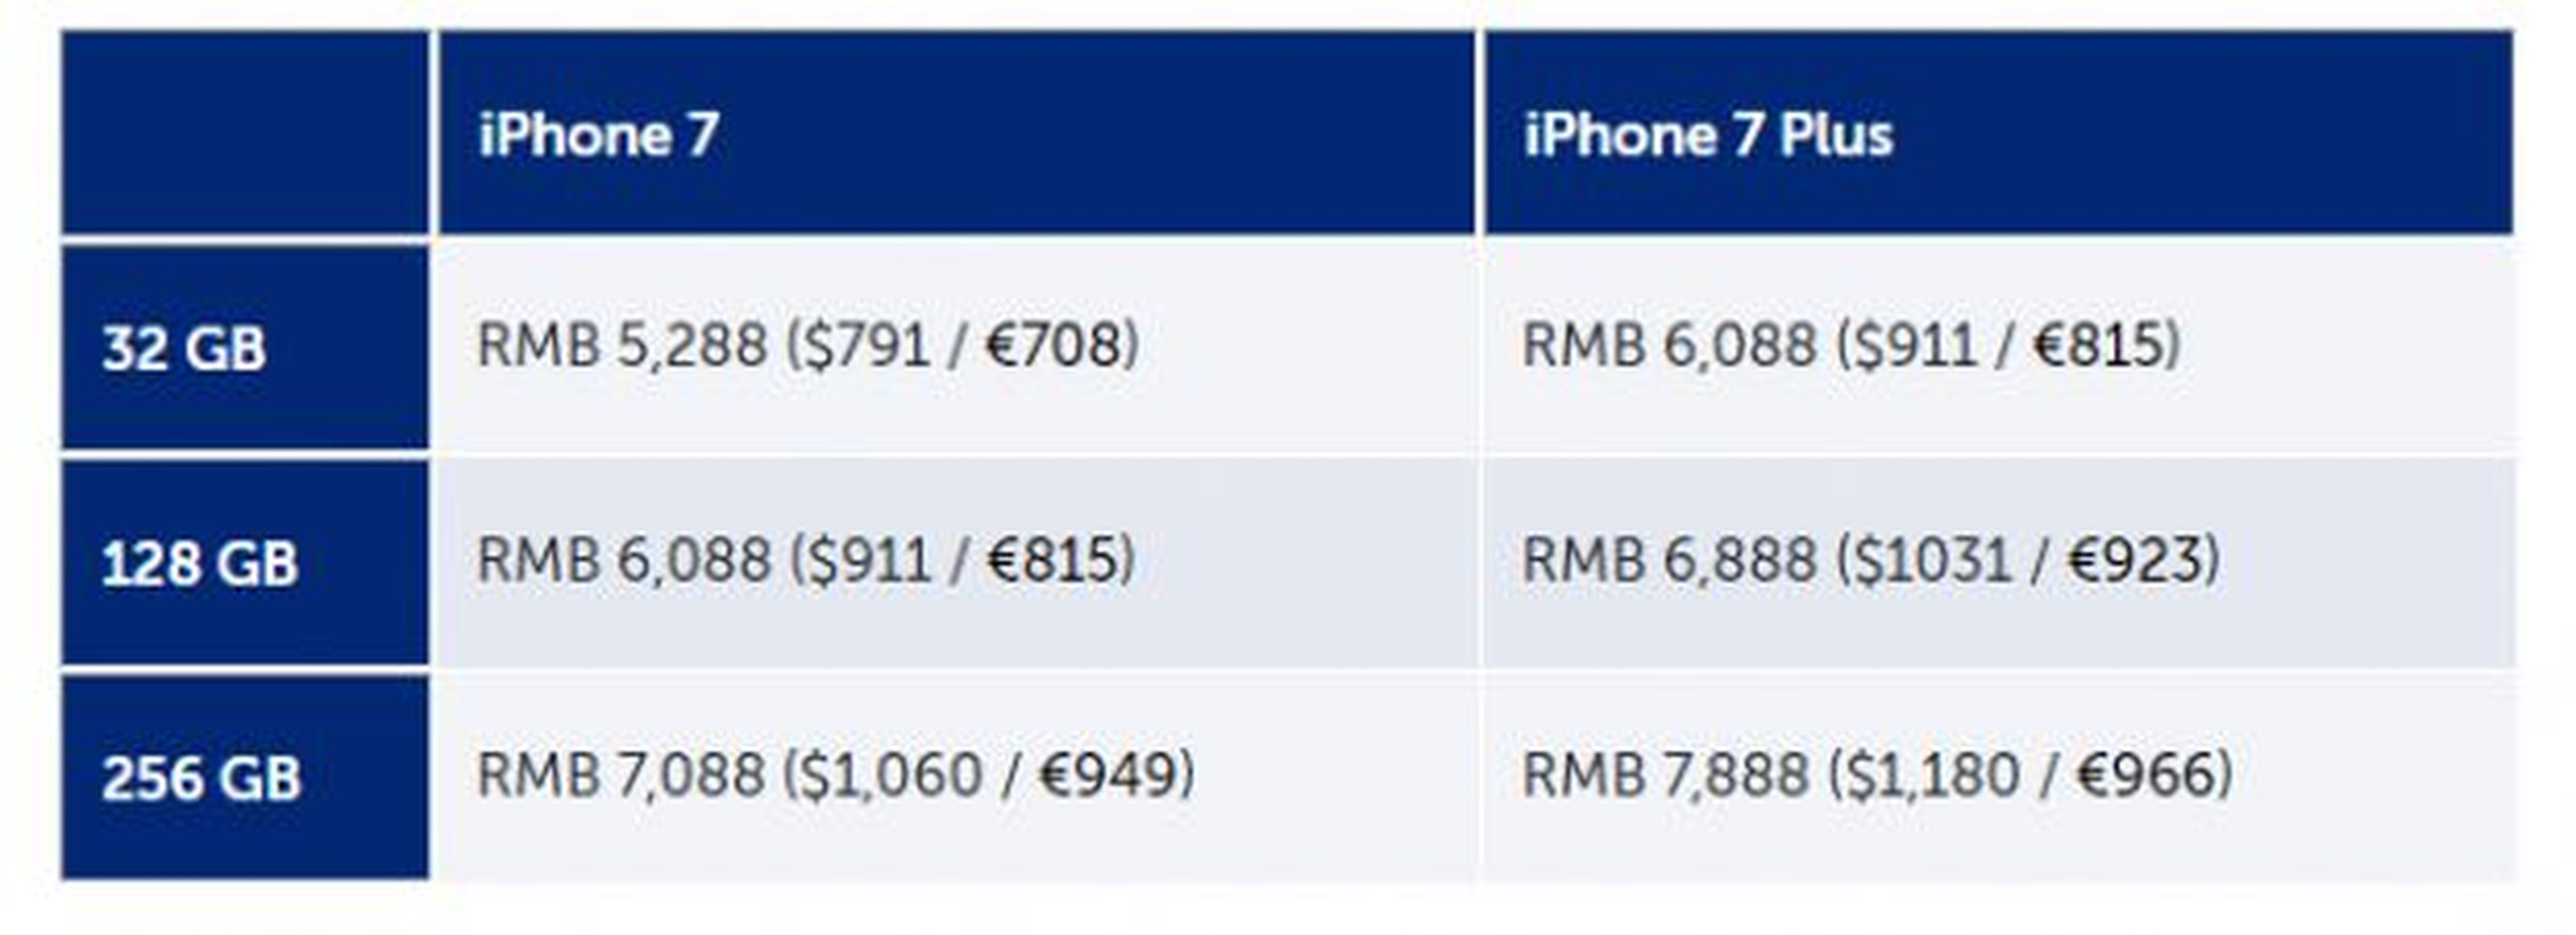 precios iphone 7